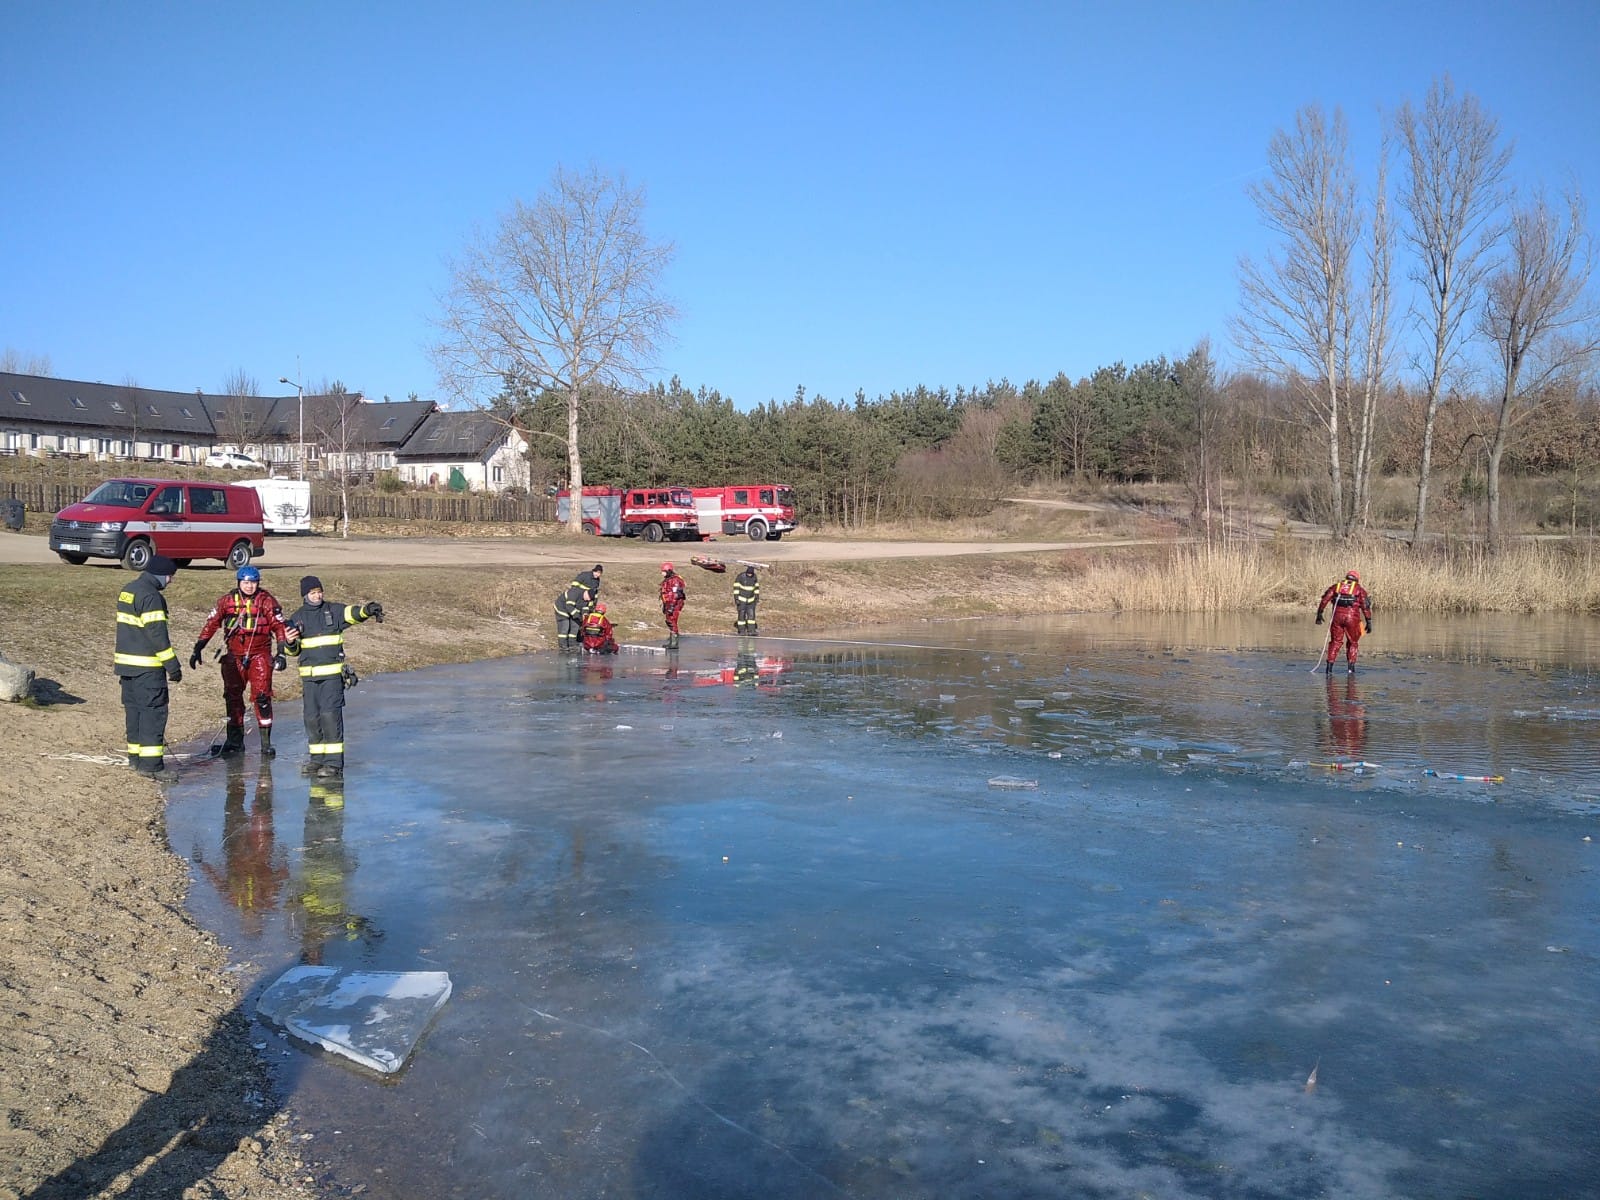 005-Výcvik kralupských a neratovických hasičů na zamrzlém jezeře Vojkovice.jpg